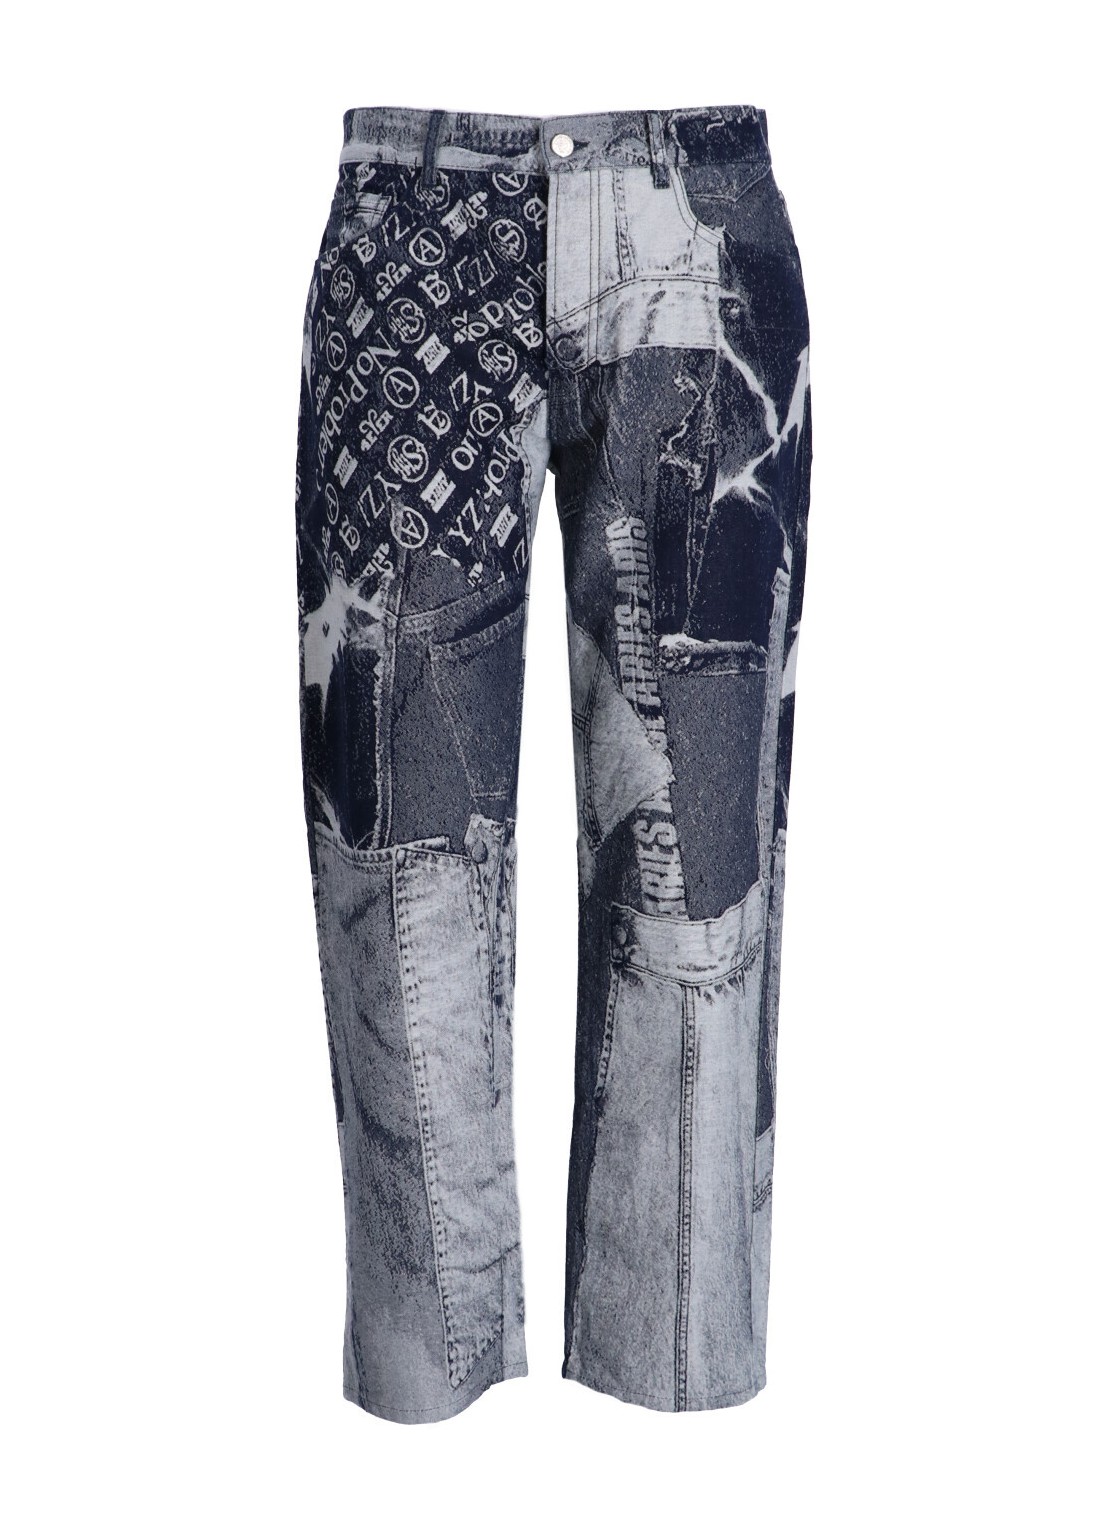 Pantalon jeans aries denim man jacquard patchwork lilly jean ruar30101 blu talla 31
 